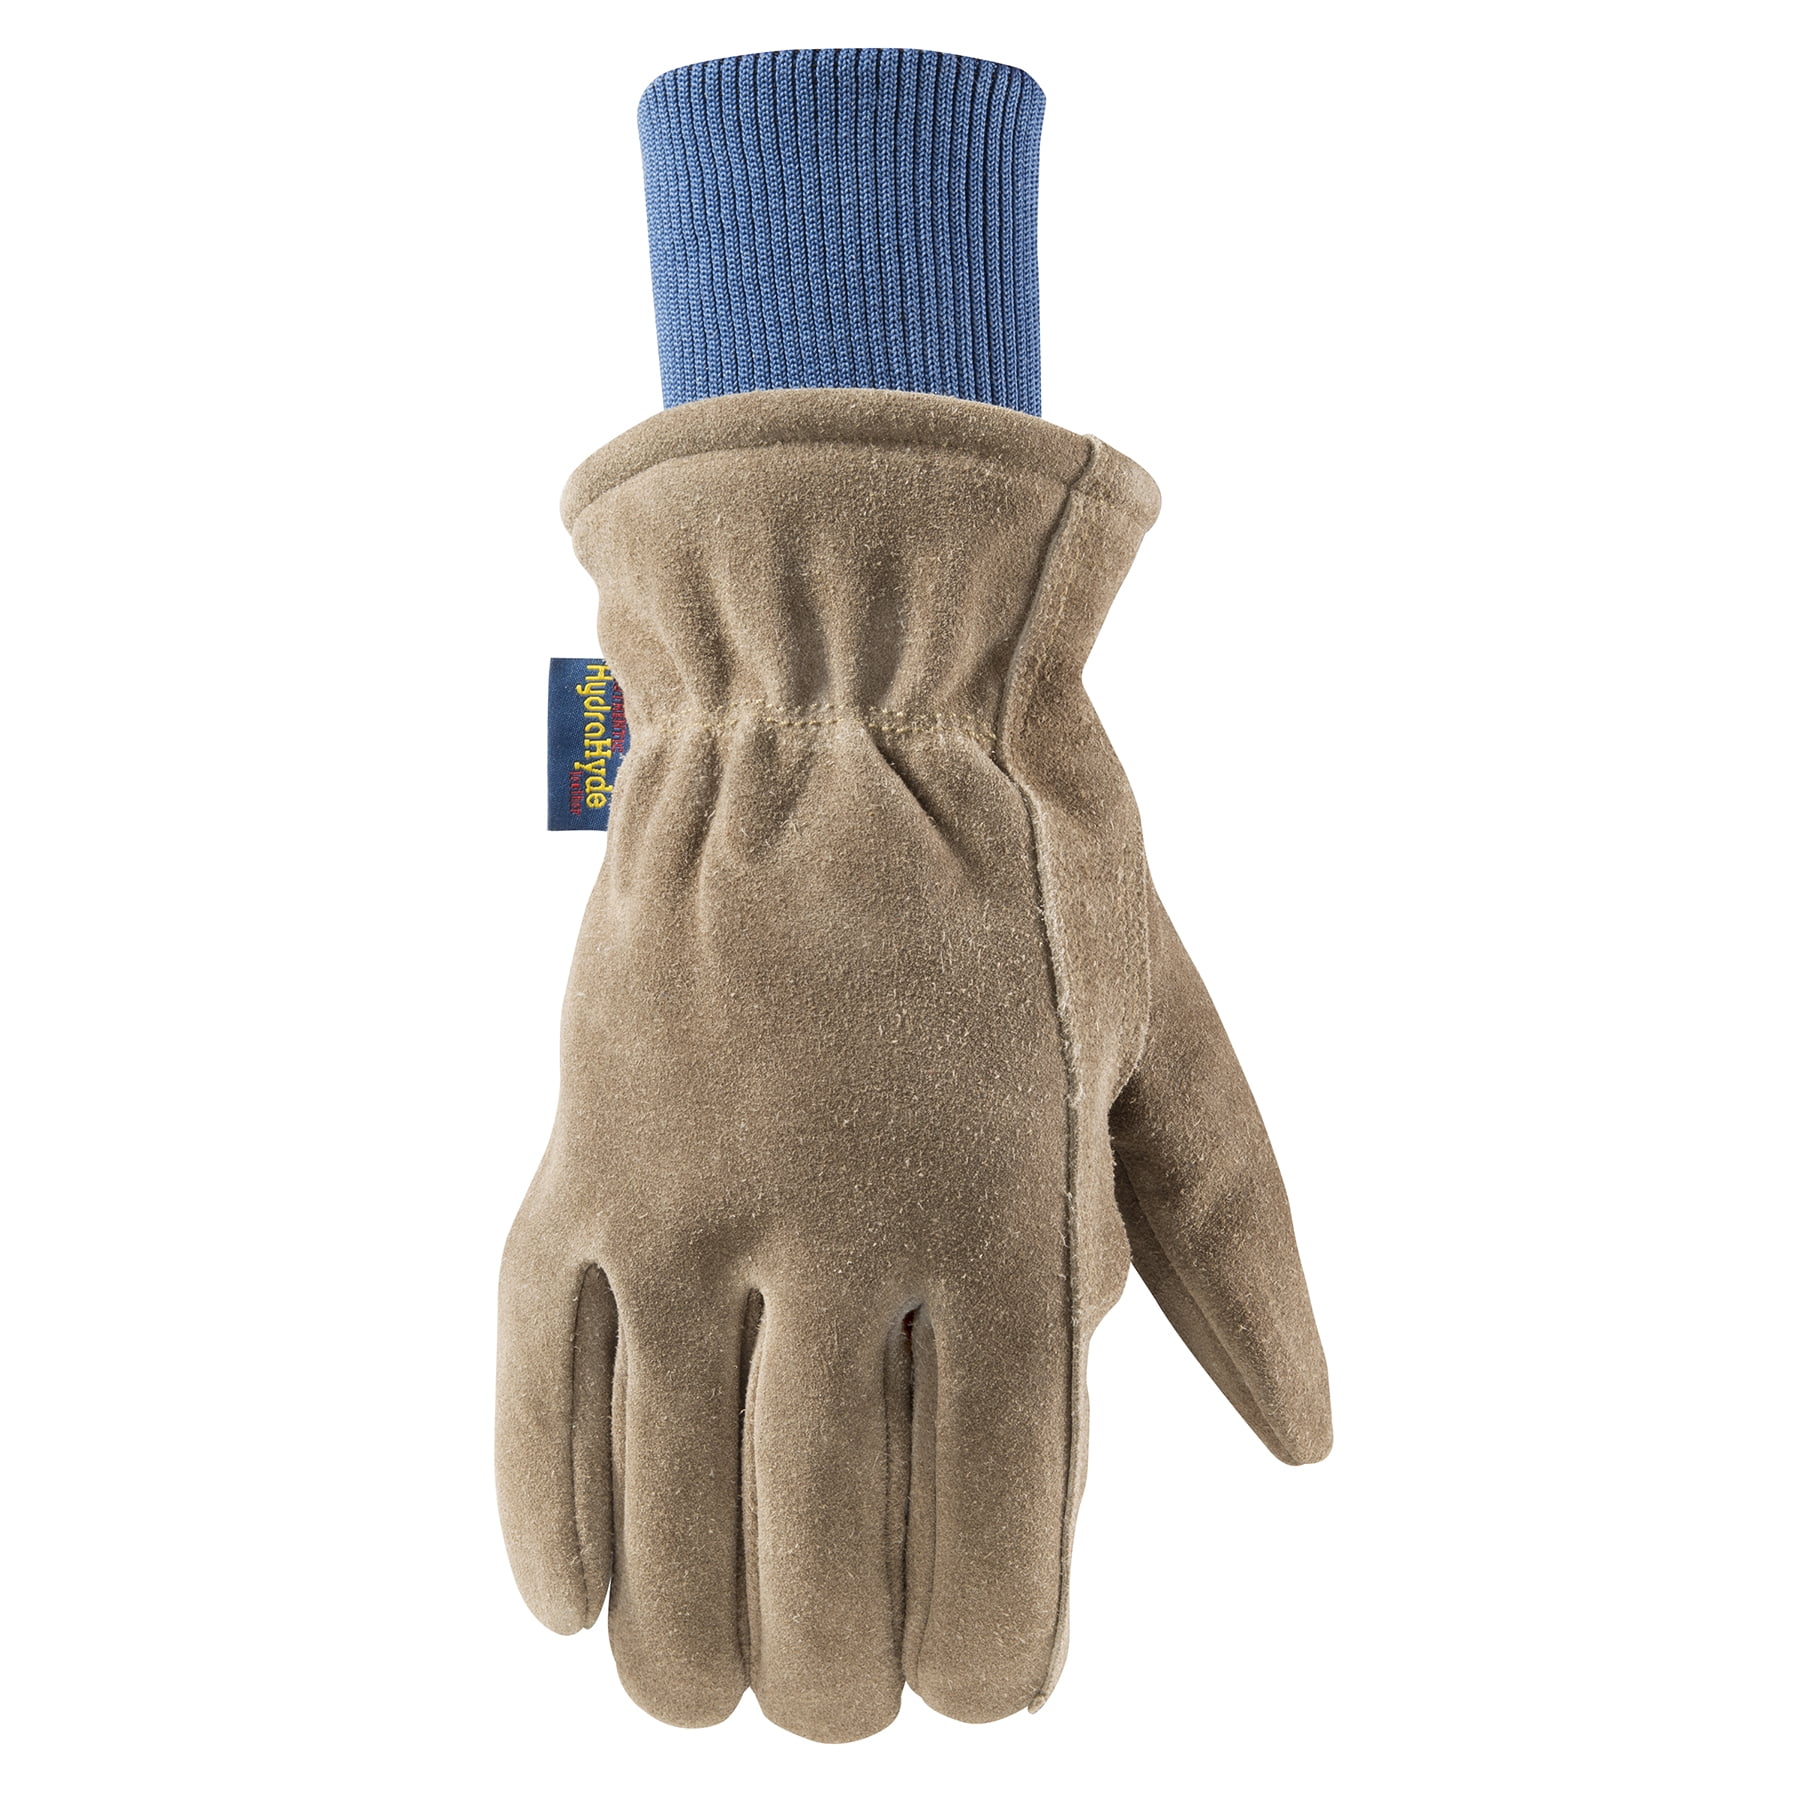 Wells Lamont Gloves Safety Cuff Medium 100-gram Insulation Wells Lamont 5235M Mens Heavy Duty Winter Work Gloves 